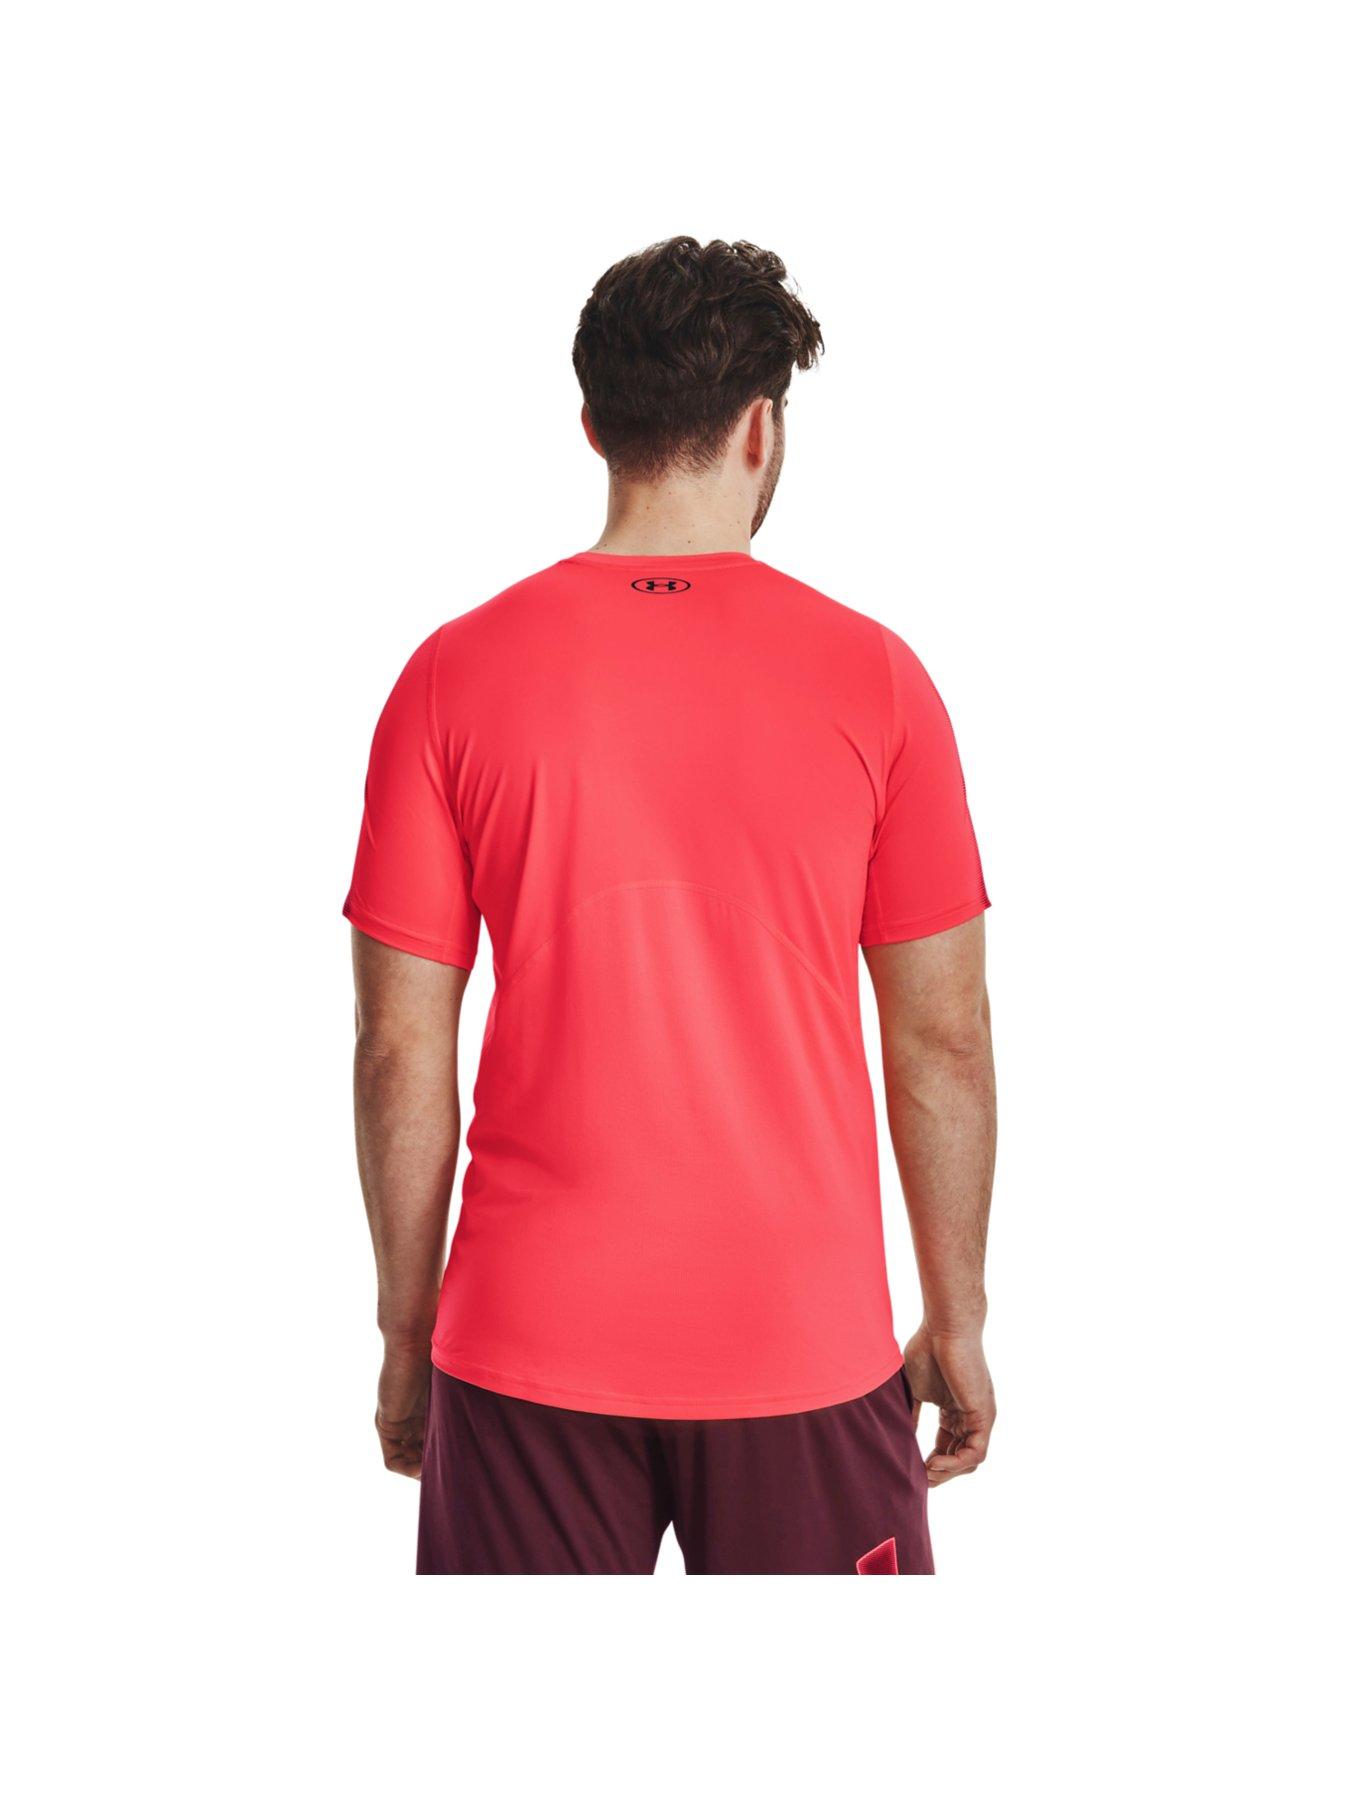 Under Armour HeatGear Men's Training T-Shirt - Red